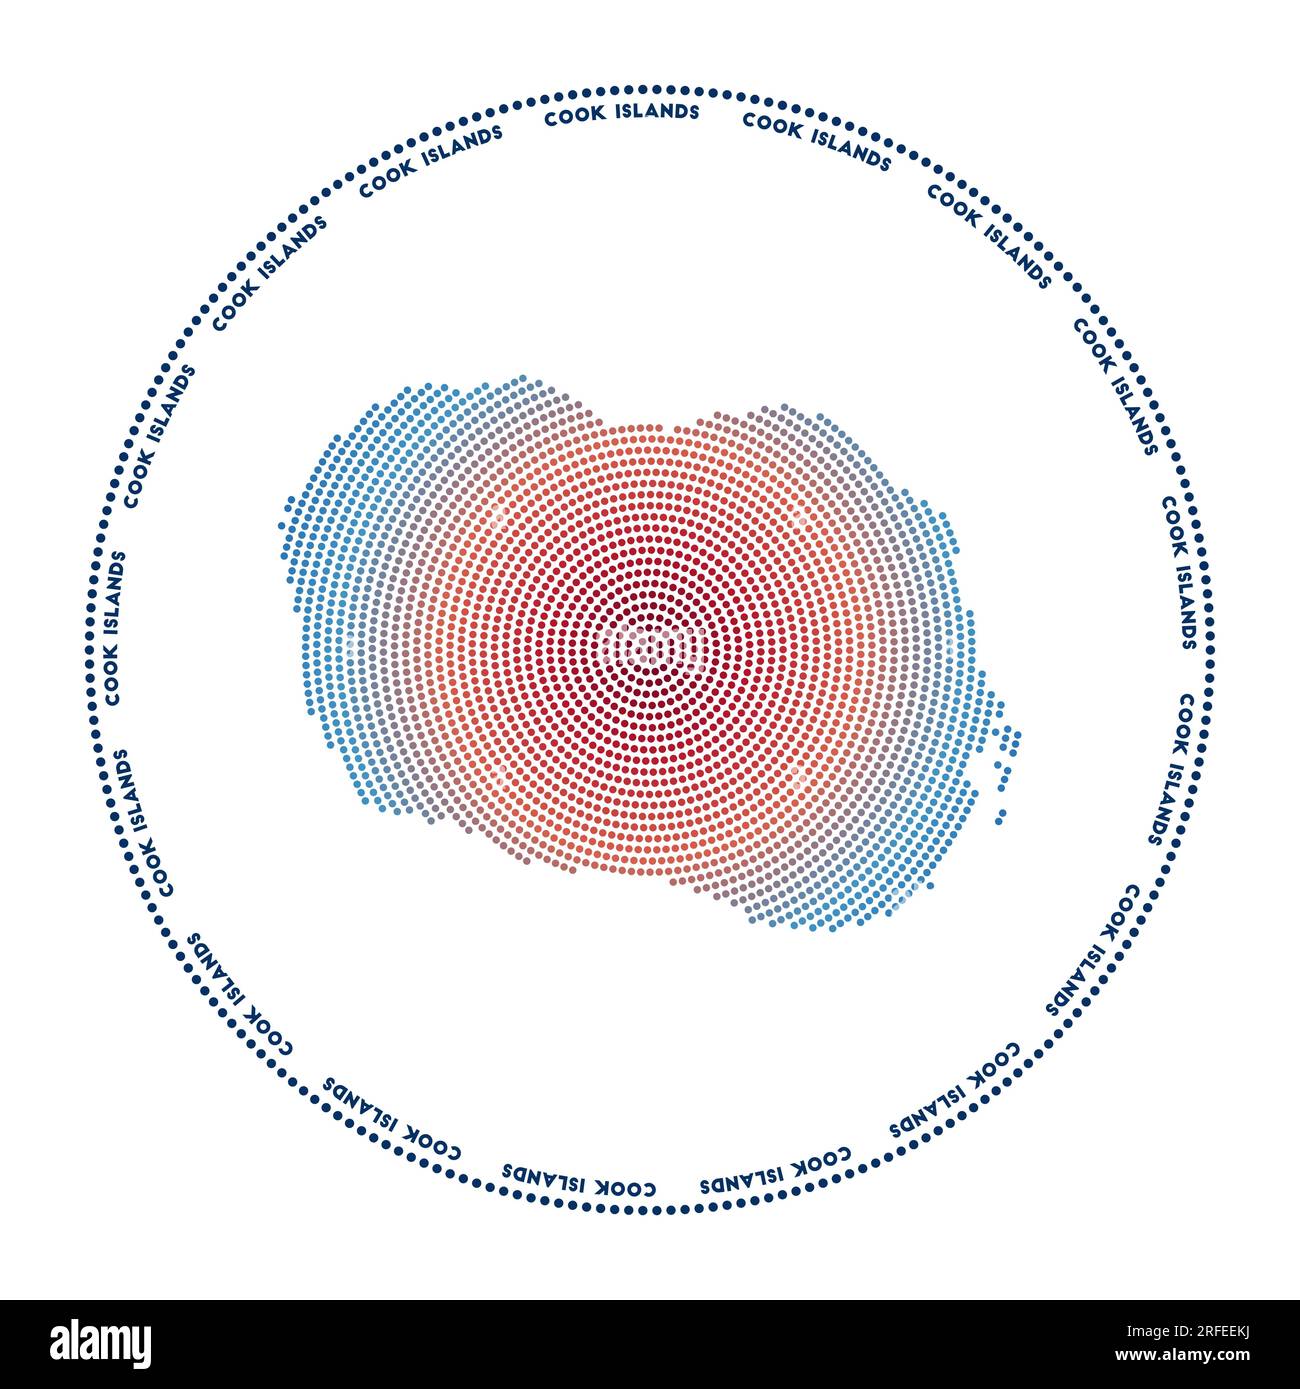 Rundes Logo der Cookinseln. Digitale Form der Cookinseln in gepunktetem Kreis mit Inselname. Technisches Symbol der Insel mit abgestuften Punkten. Erstaunlich Stock Vektor